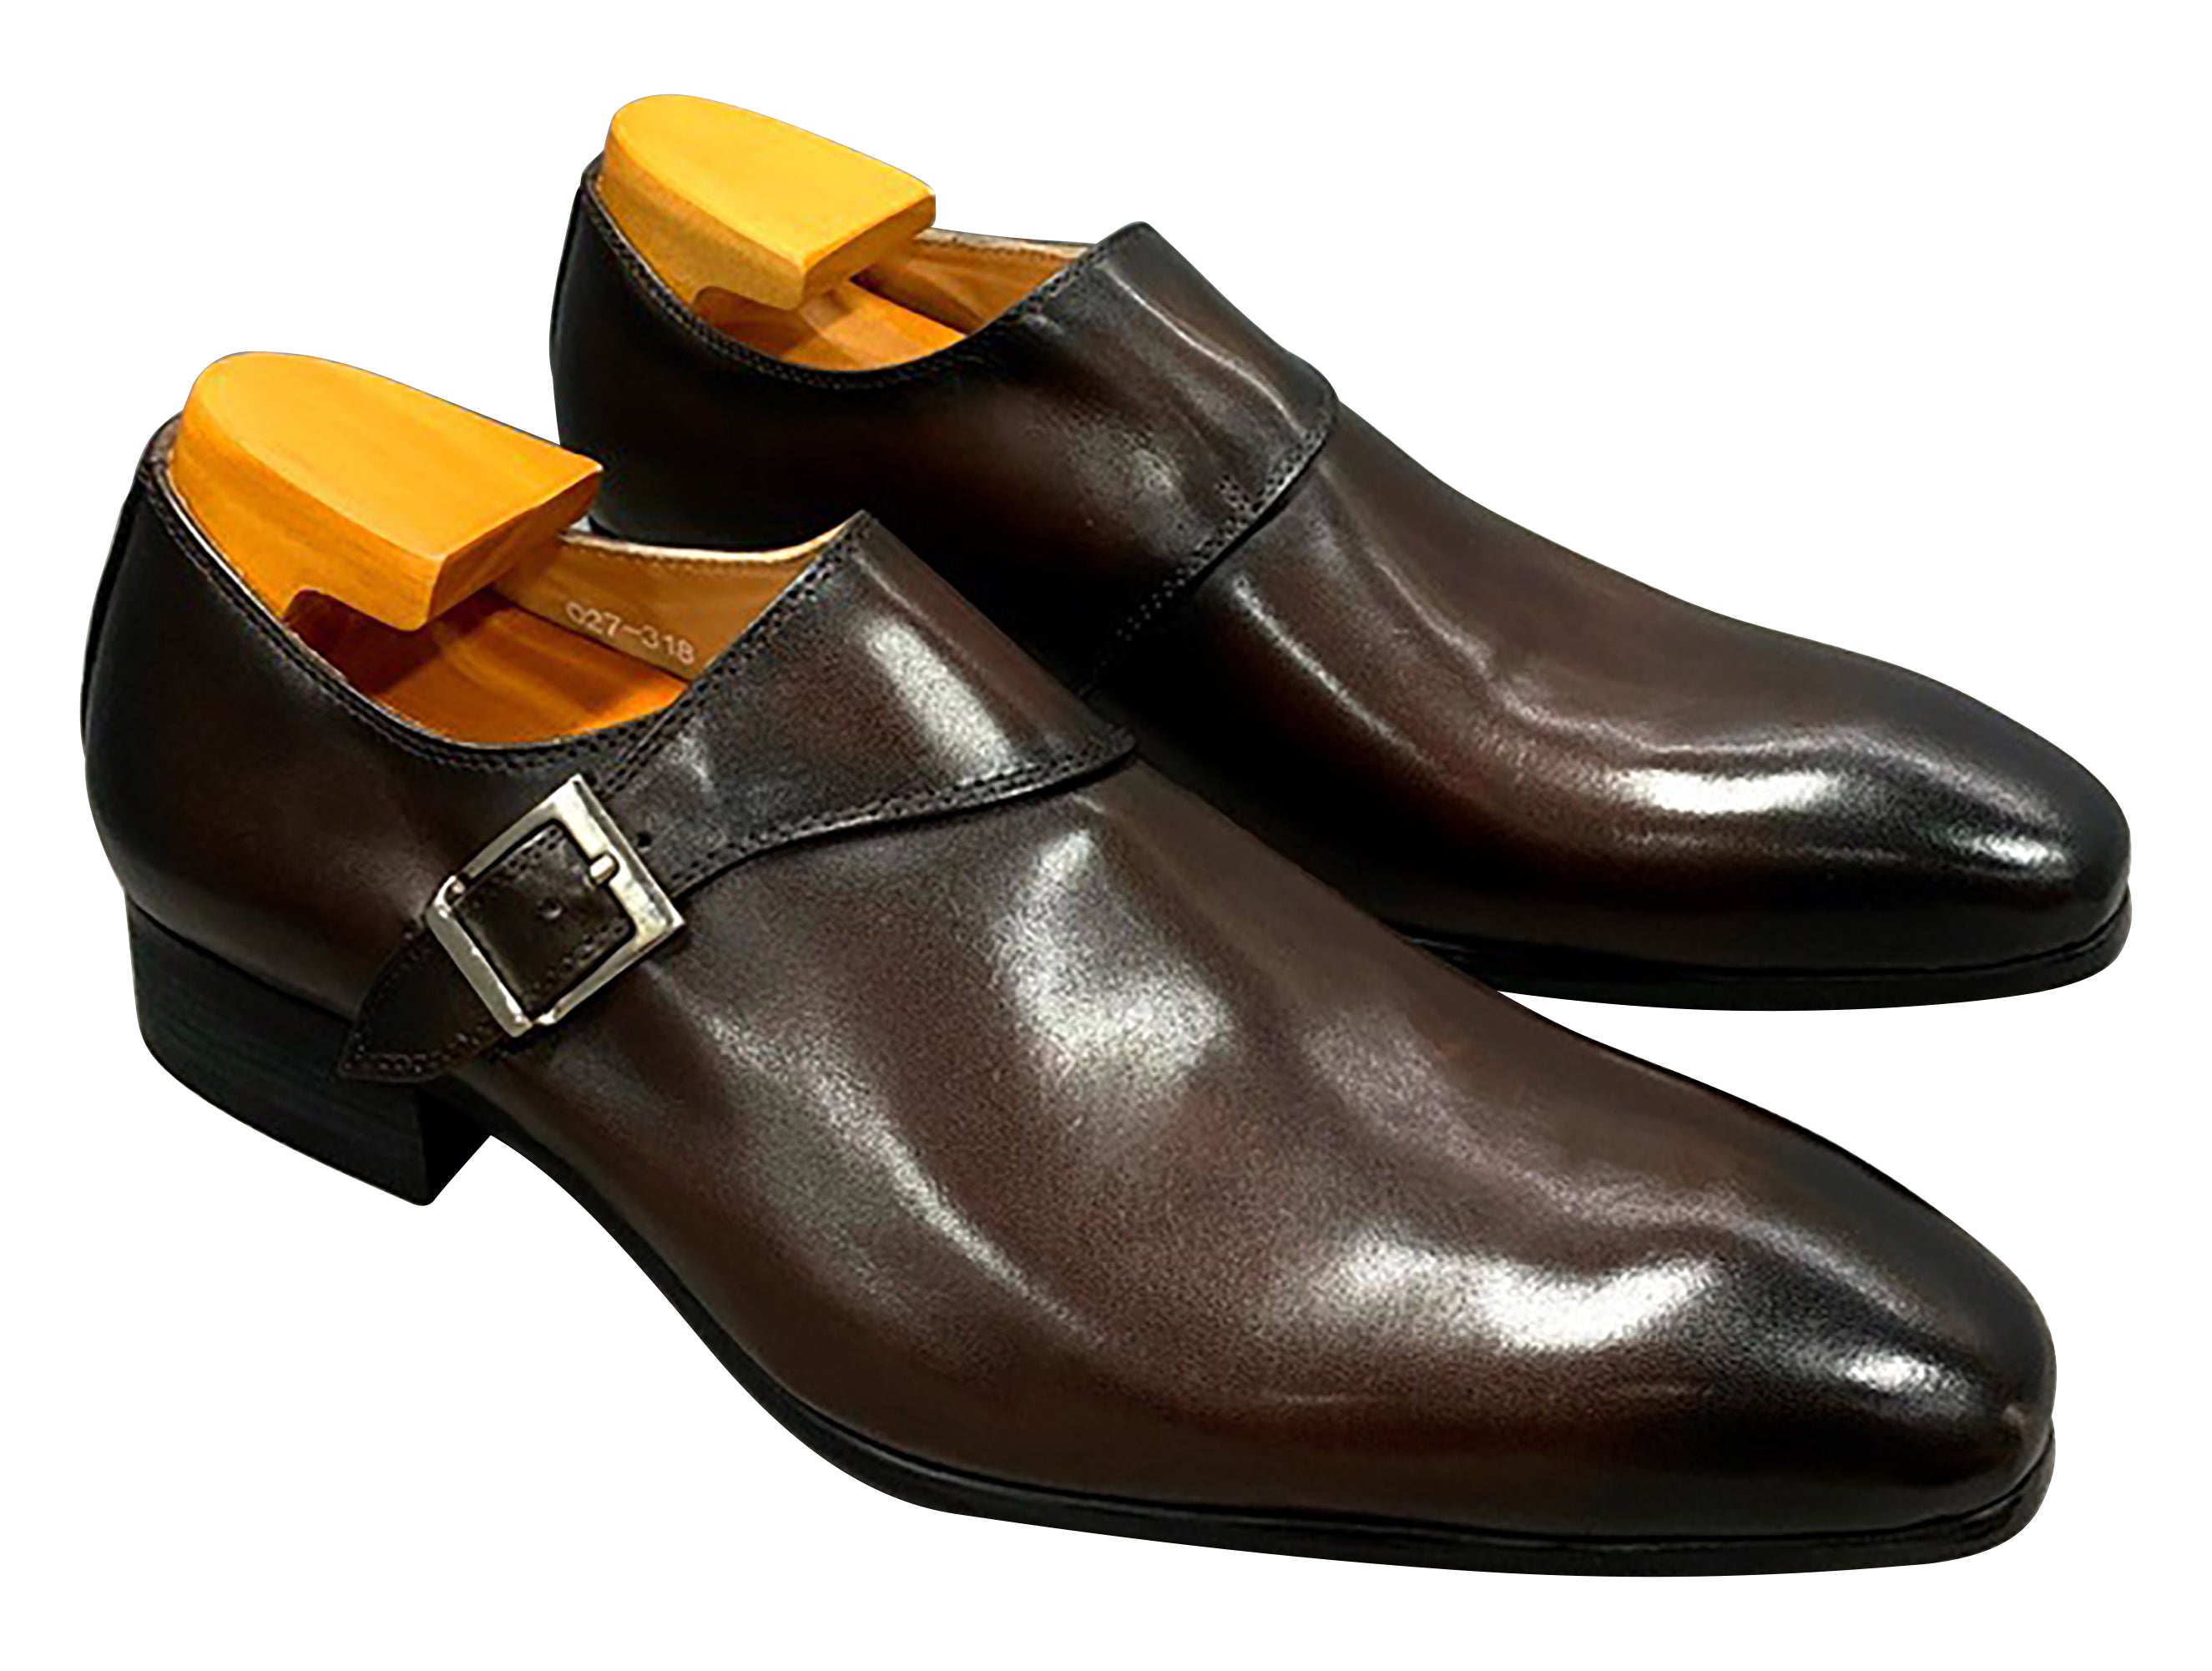 Men's Dress Formal Single Buckle Monk Strap Loafers